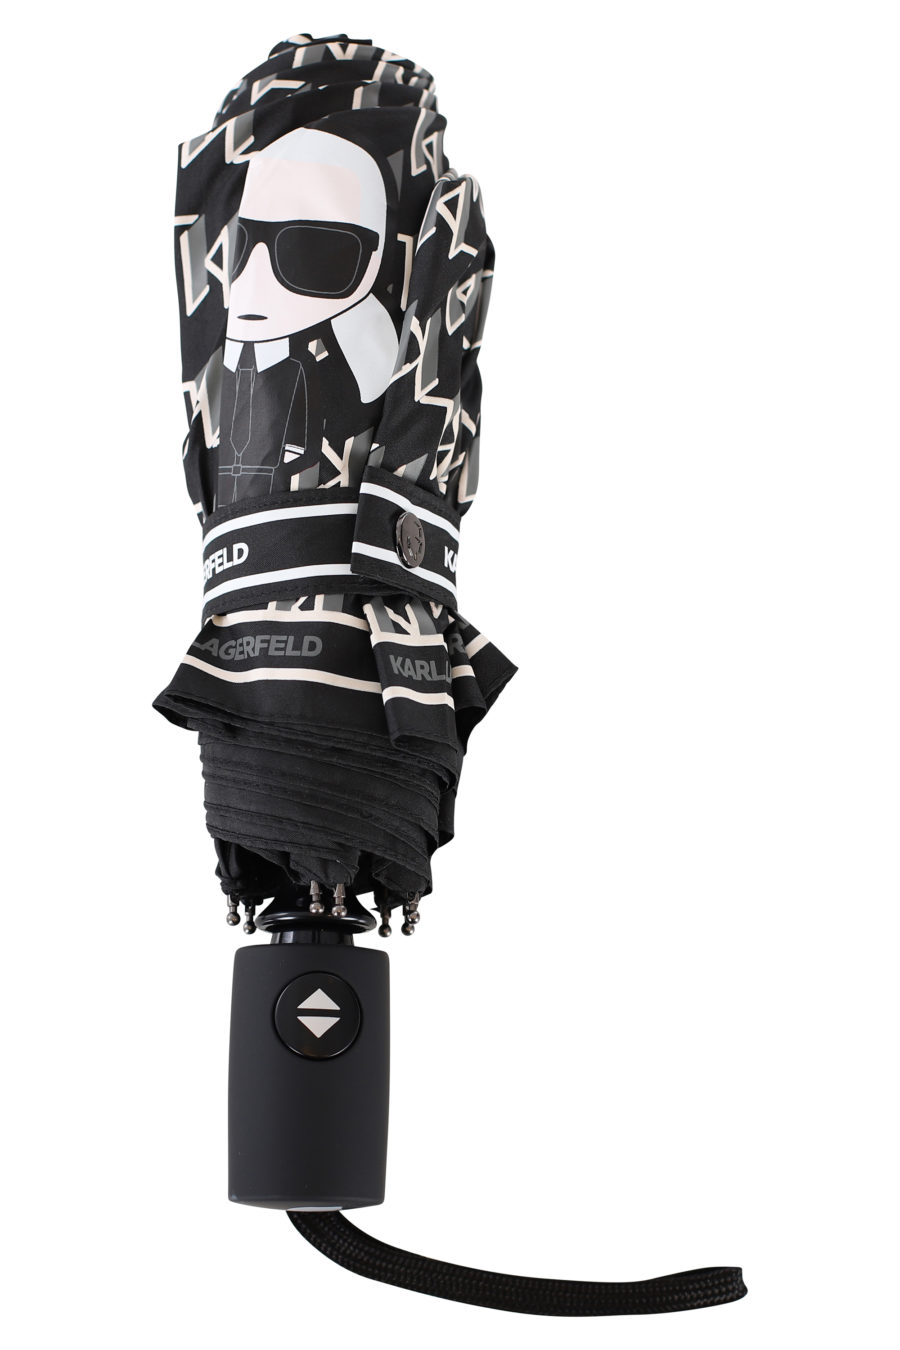 Regenschirm mit schwarzem Monogramm - IMG 2147